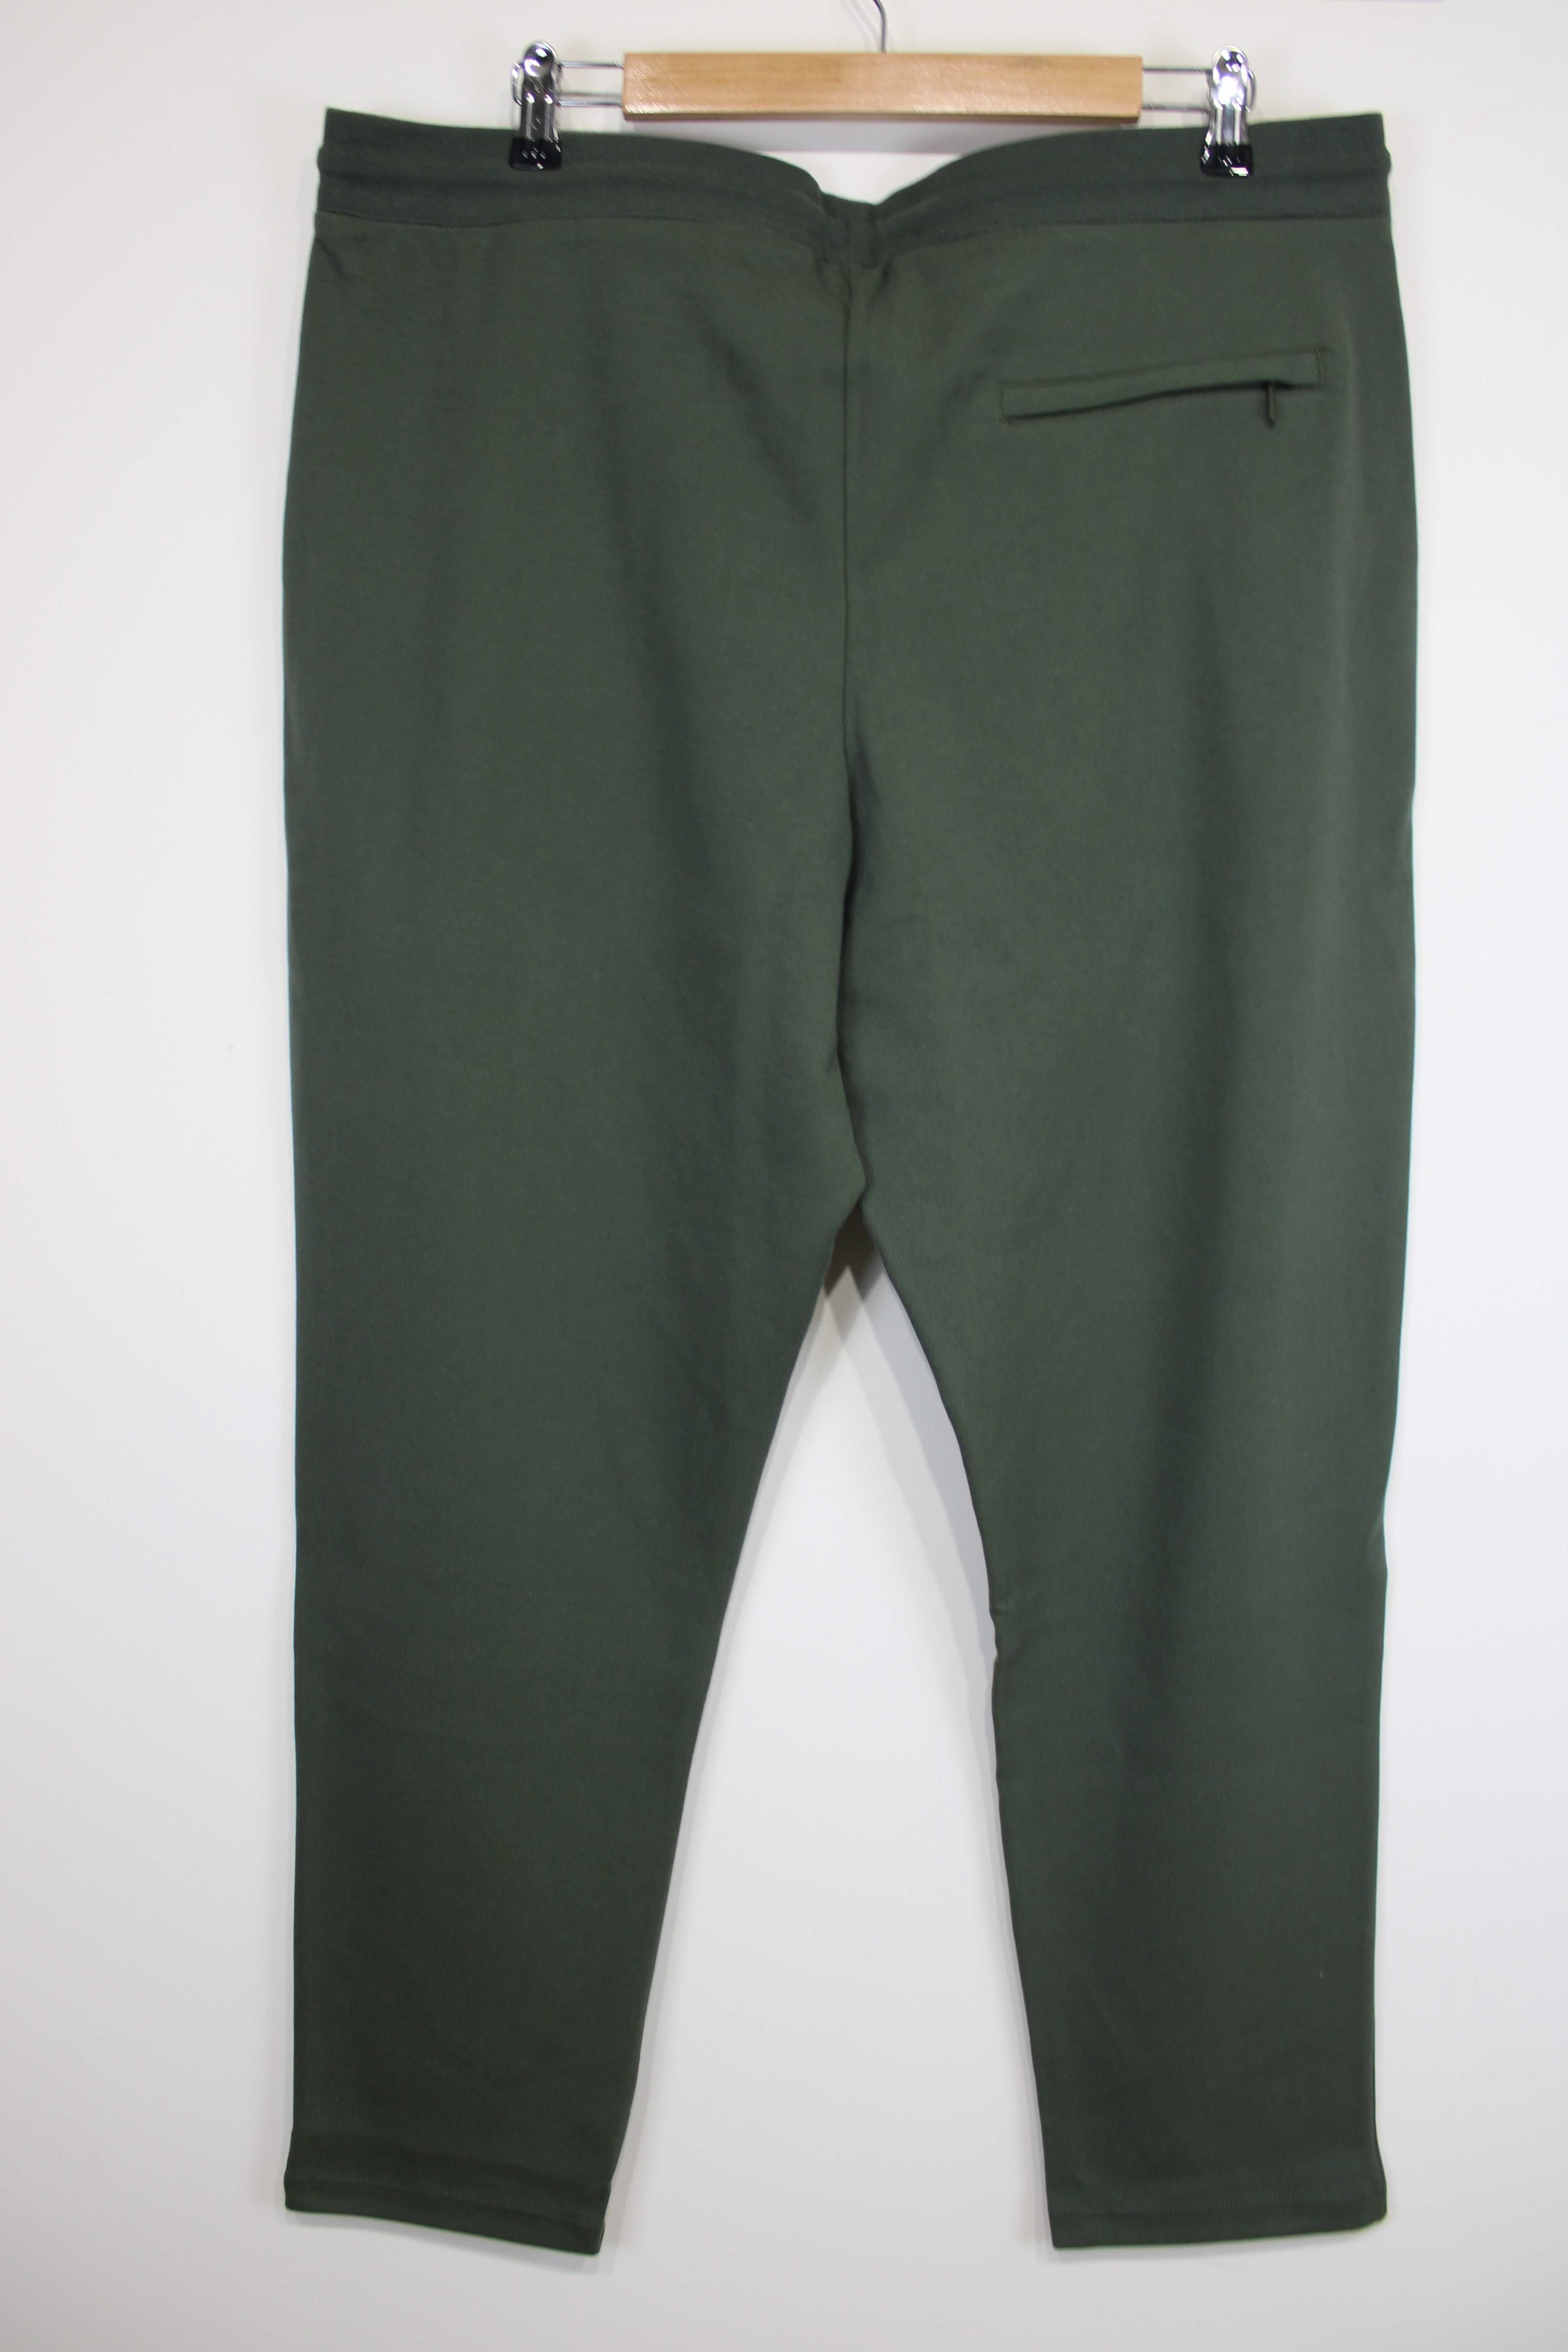 Armani Exchange spodnie dresowe męskie zielony rozmiar XL